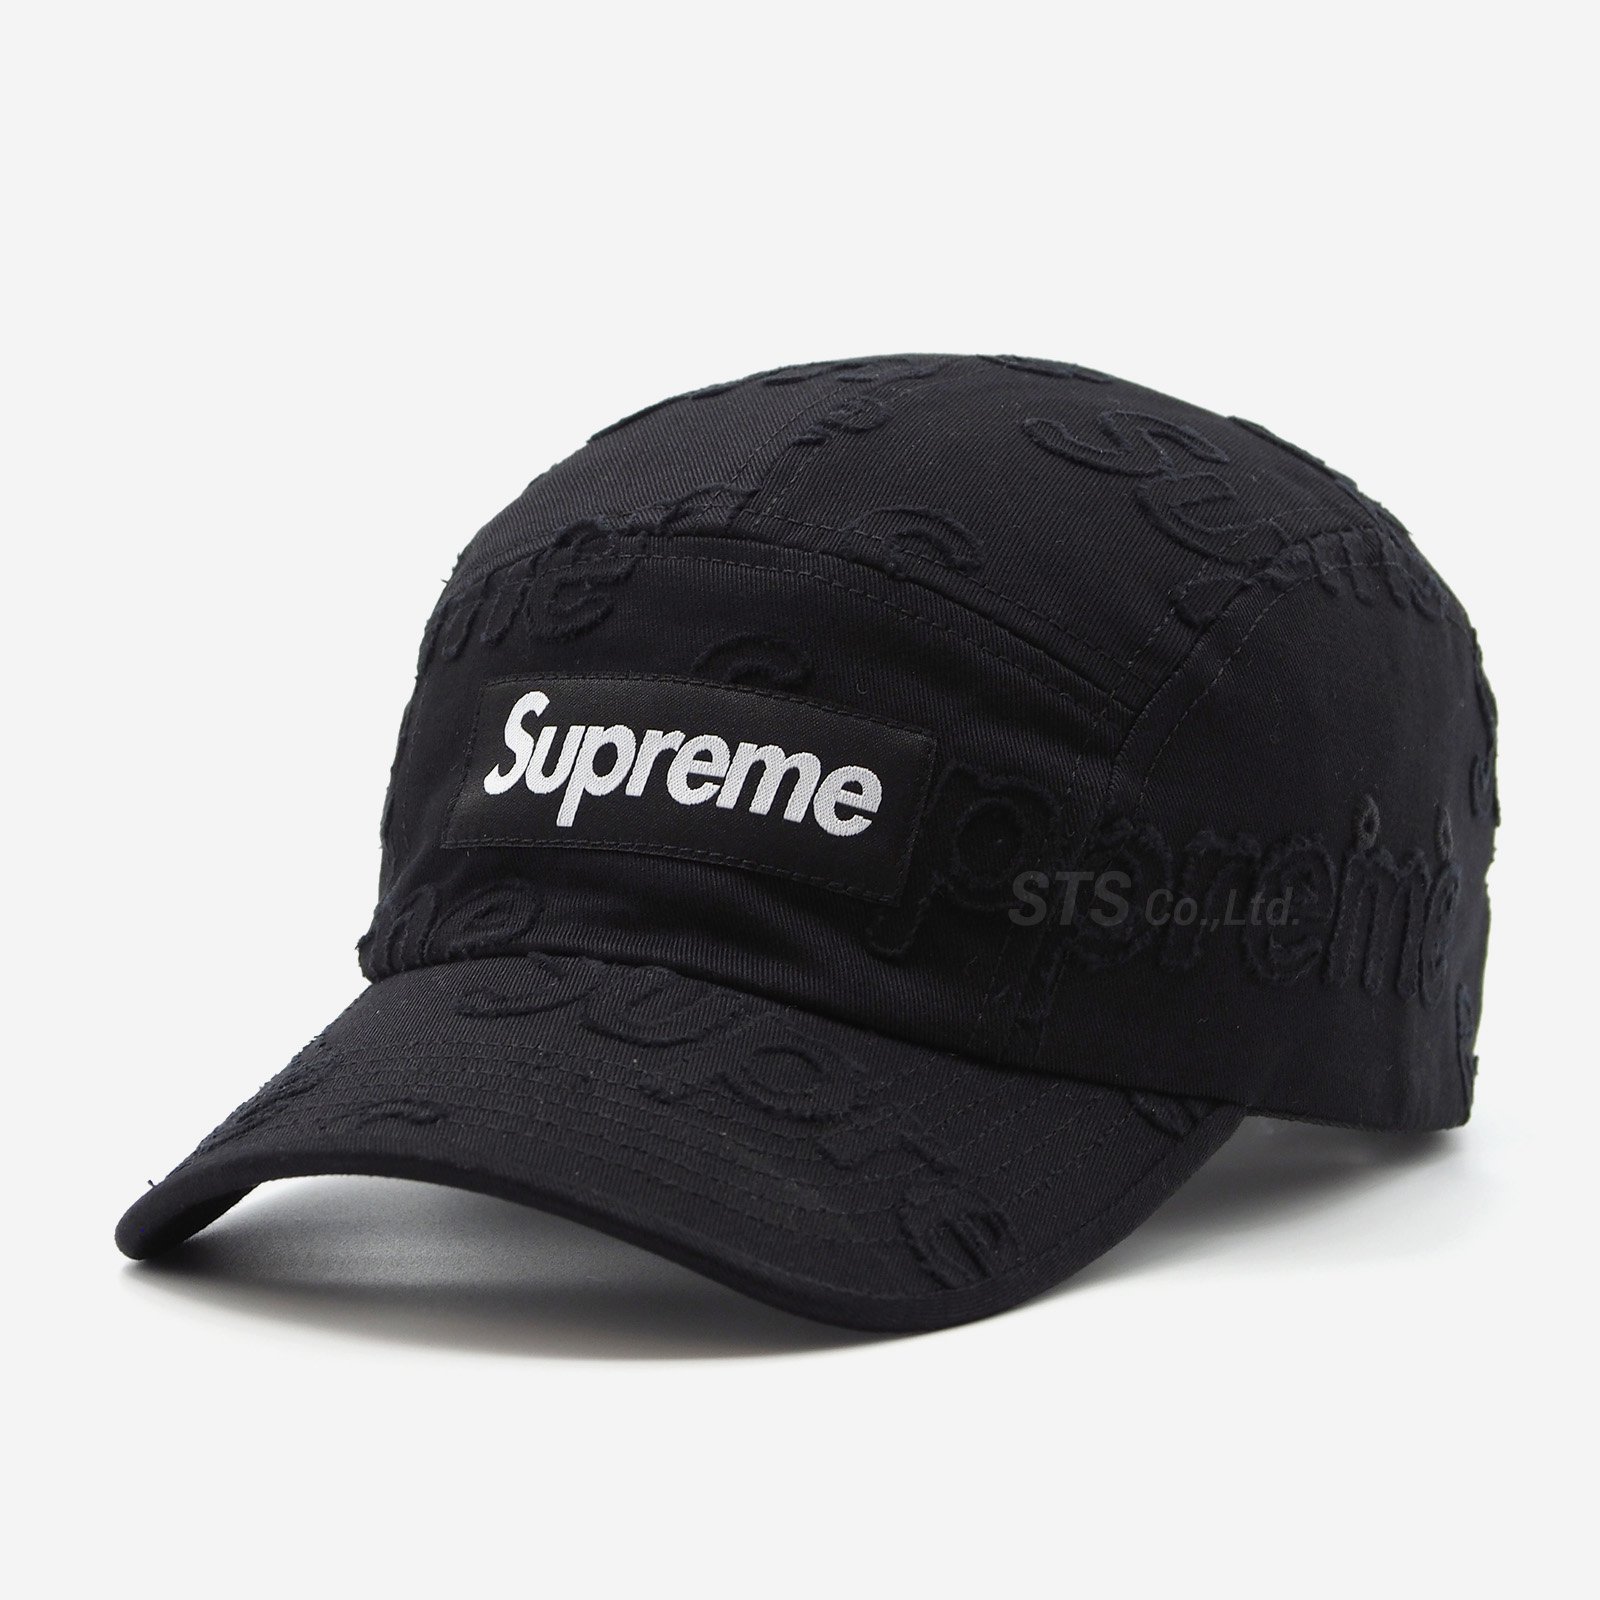 supreme campcap帽子